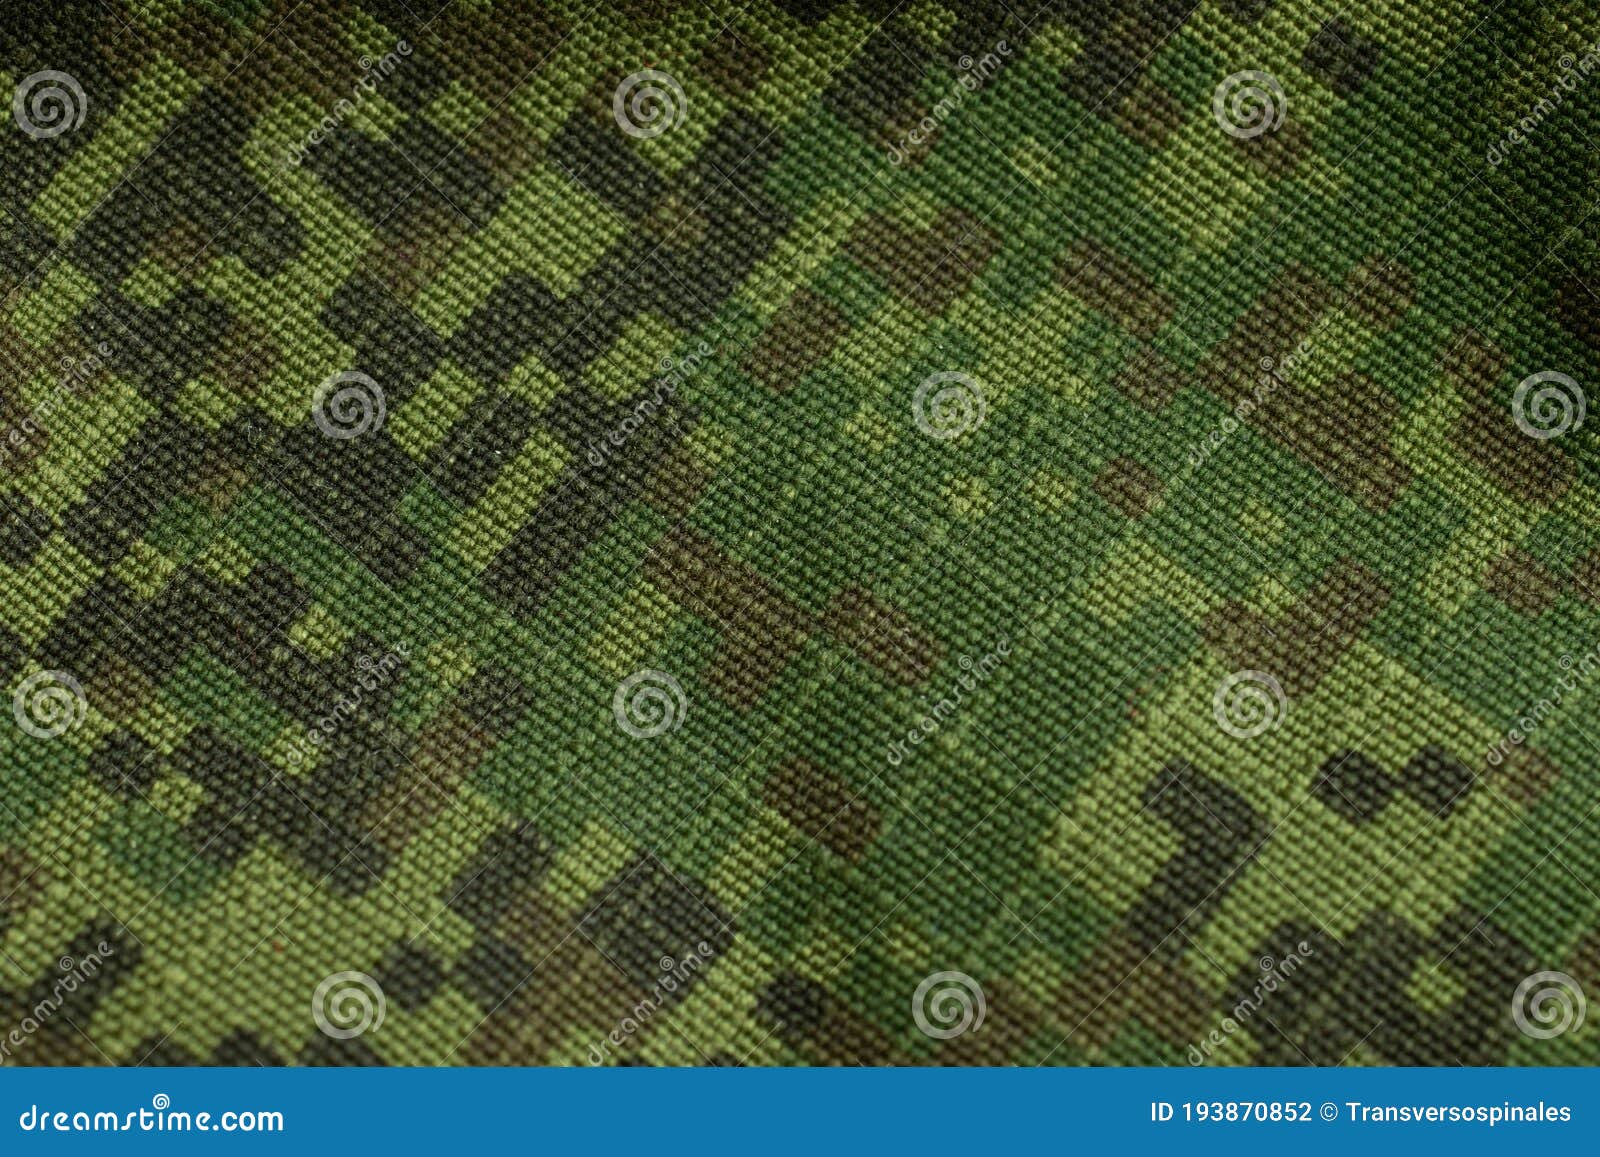 Vải xanh quân đội: Chỉ cần chạm tay vào chất liệu vải xanh quân đội, bạn sẽ thấy sự chắc chắn và đẳng cấp của nó. Màu xanh tươi sẽ làm nổi bật phong cách nam tính, mạnh mẽ của bạn. Hãy xem hình ảnh liên quan đến vải này để thấy ngay sự thu hút của nó.